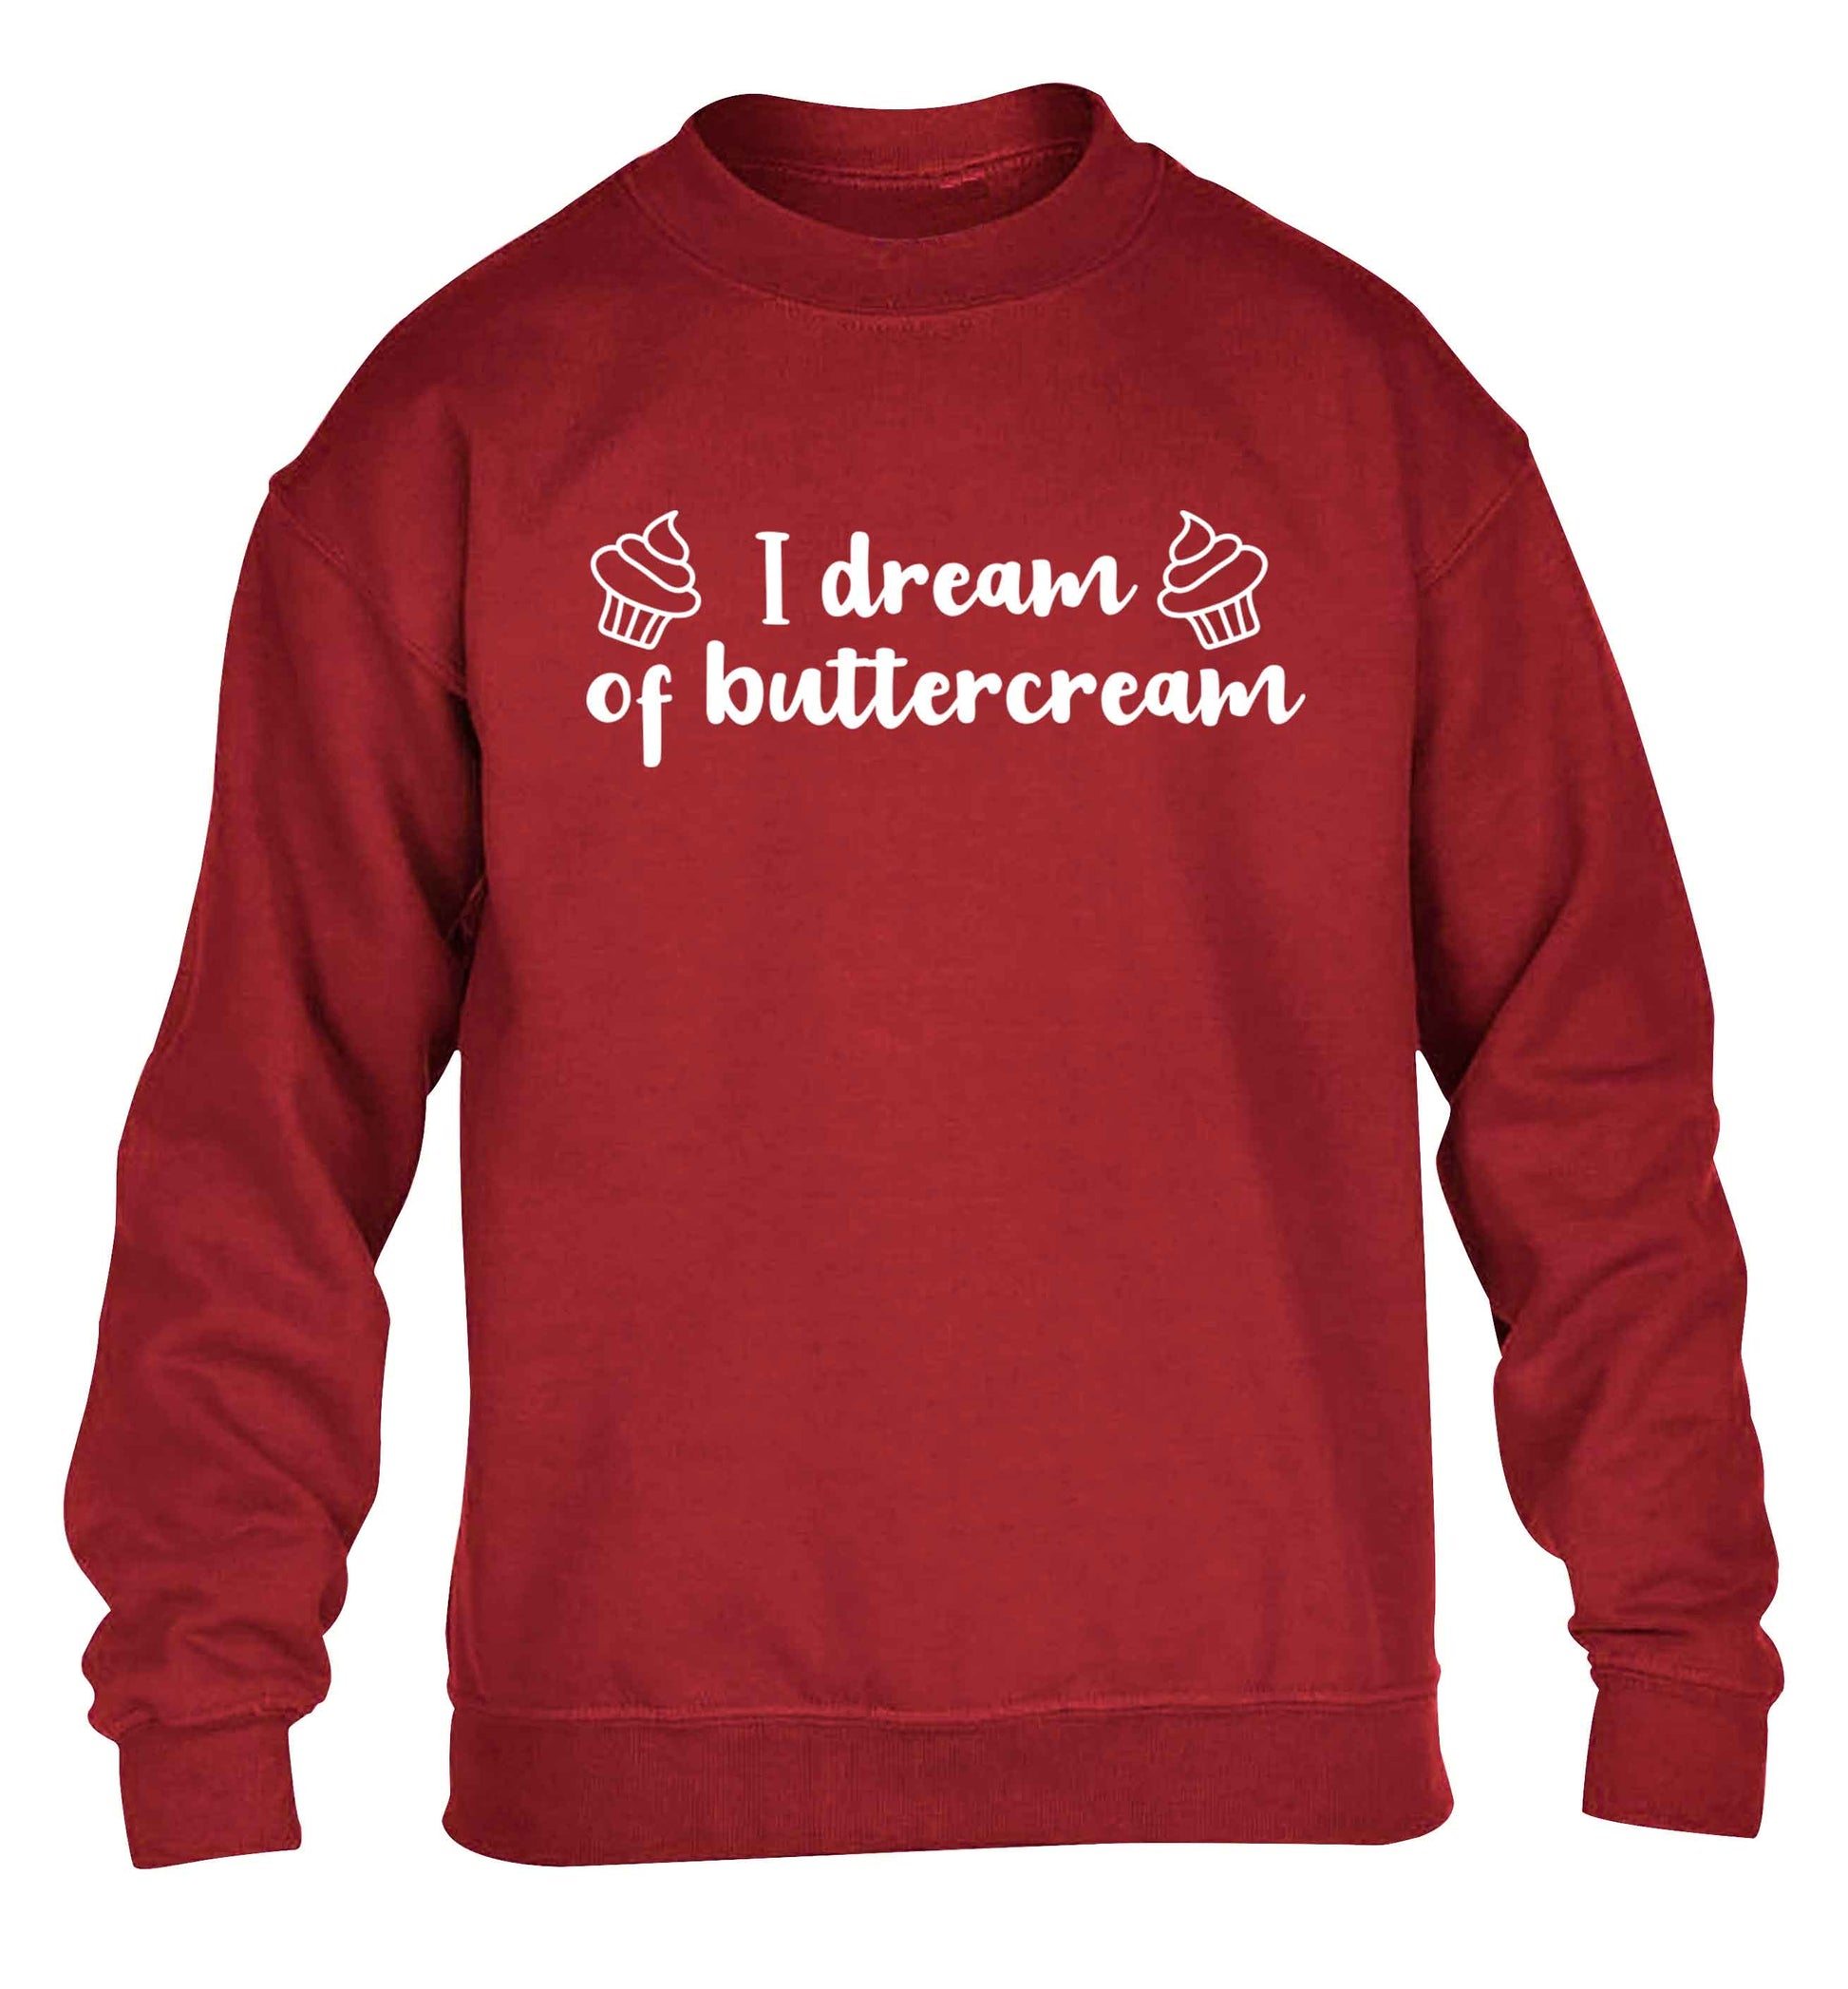 I dream of buttercream children's grey sweater 12-13 Years